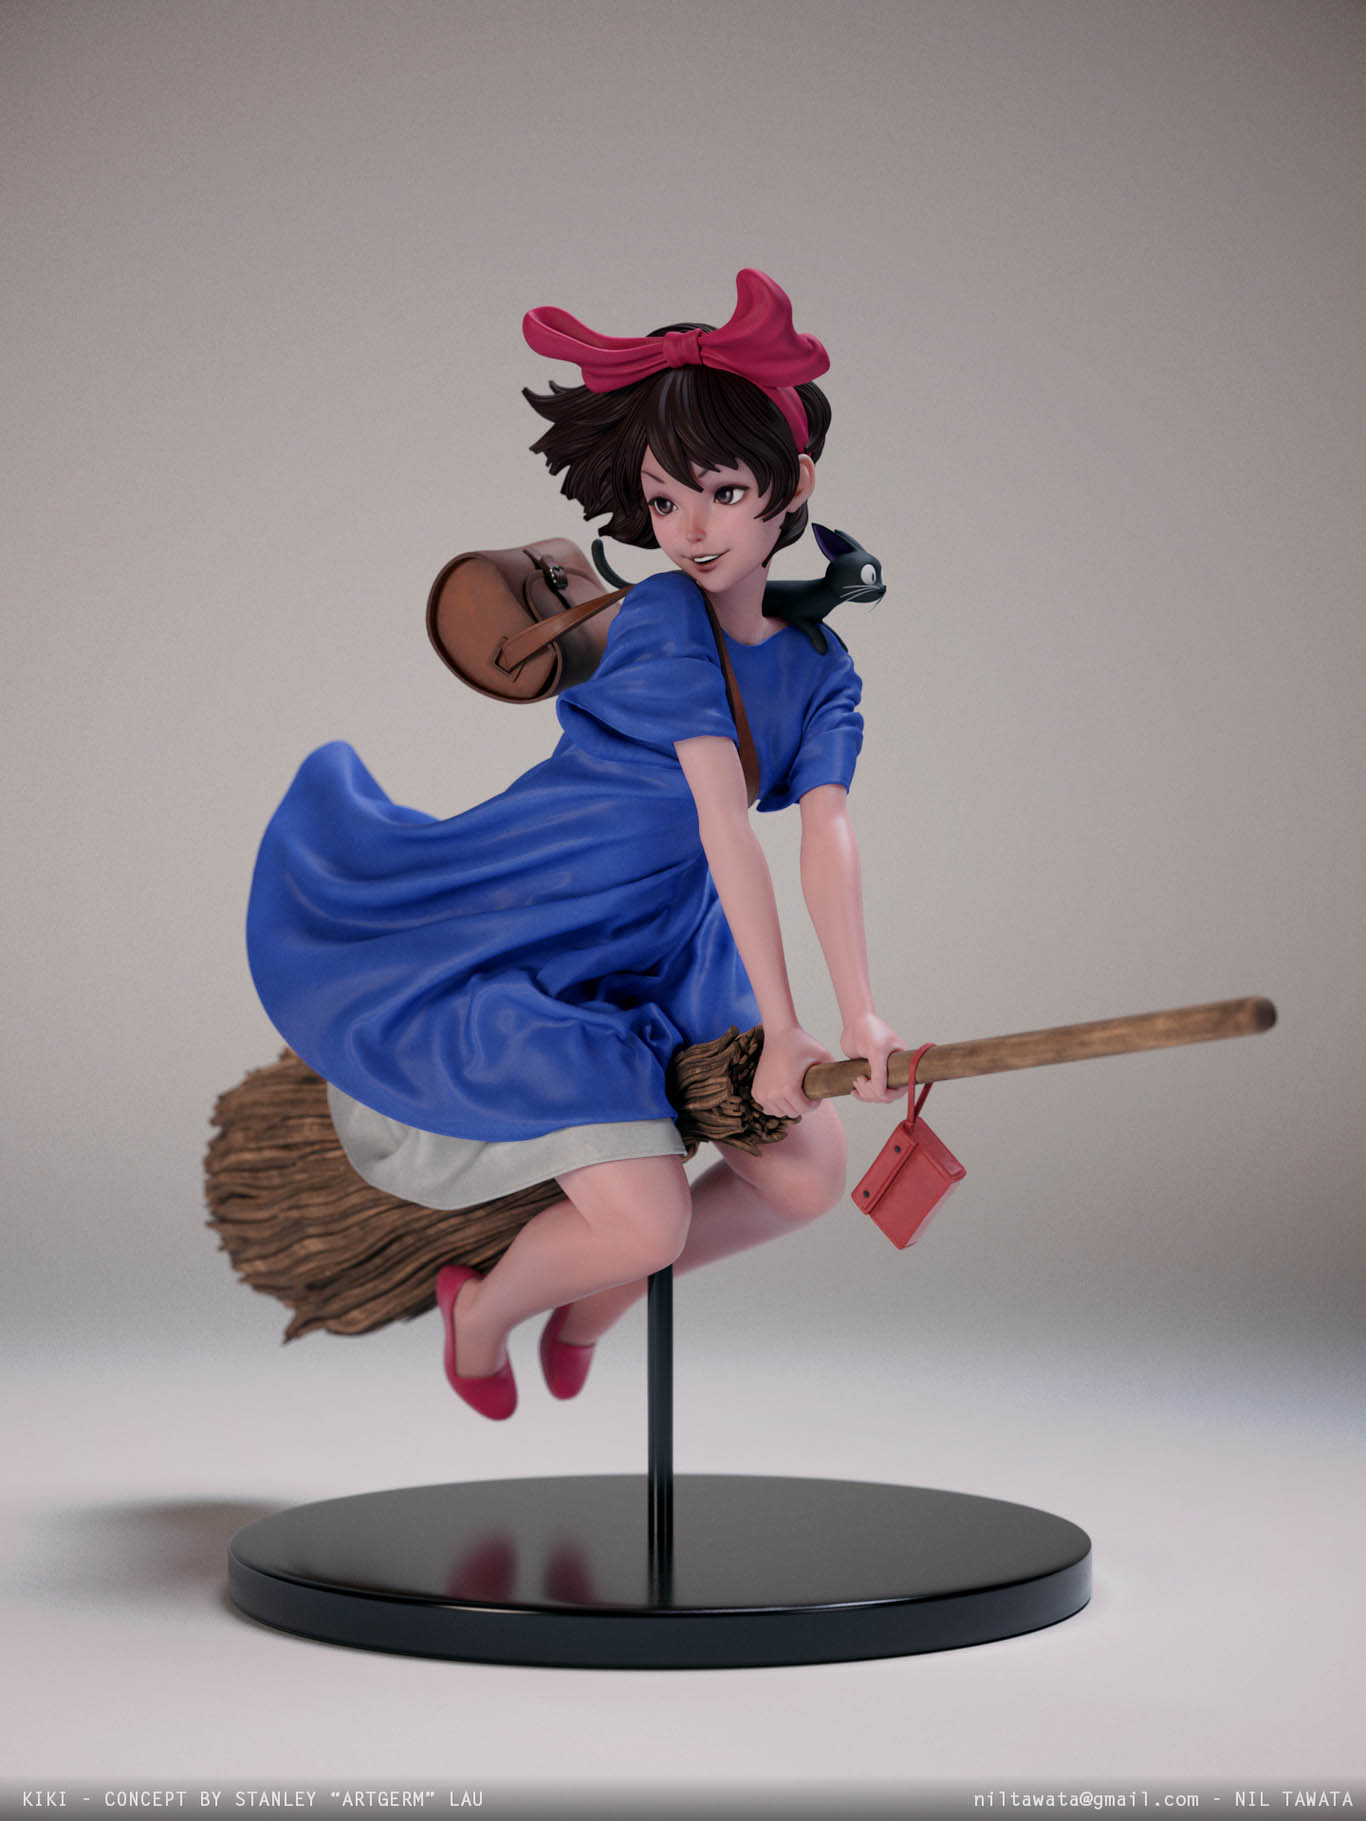 3d model character kiki by nilberto tawata